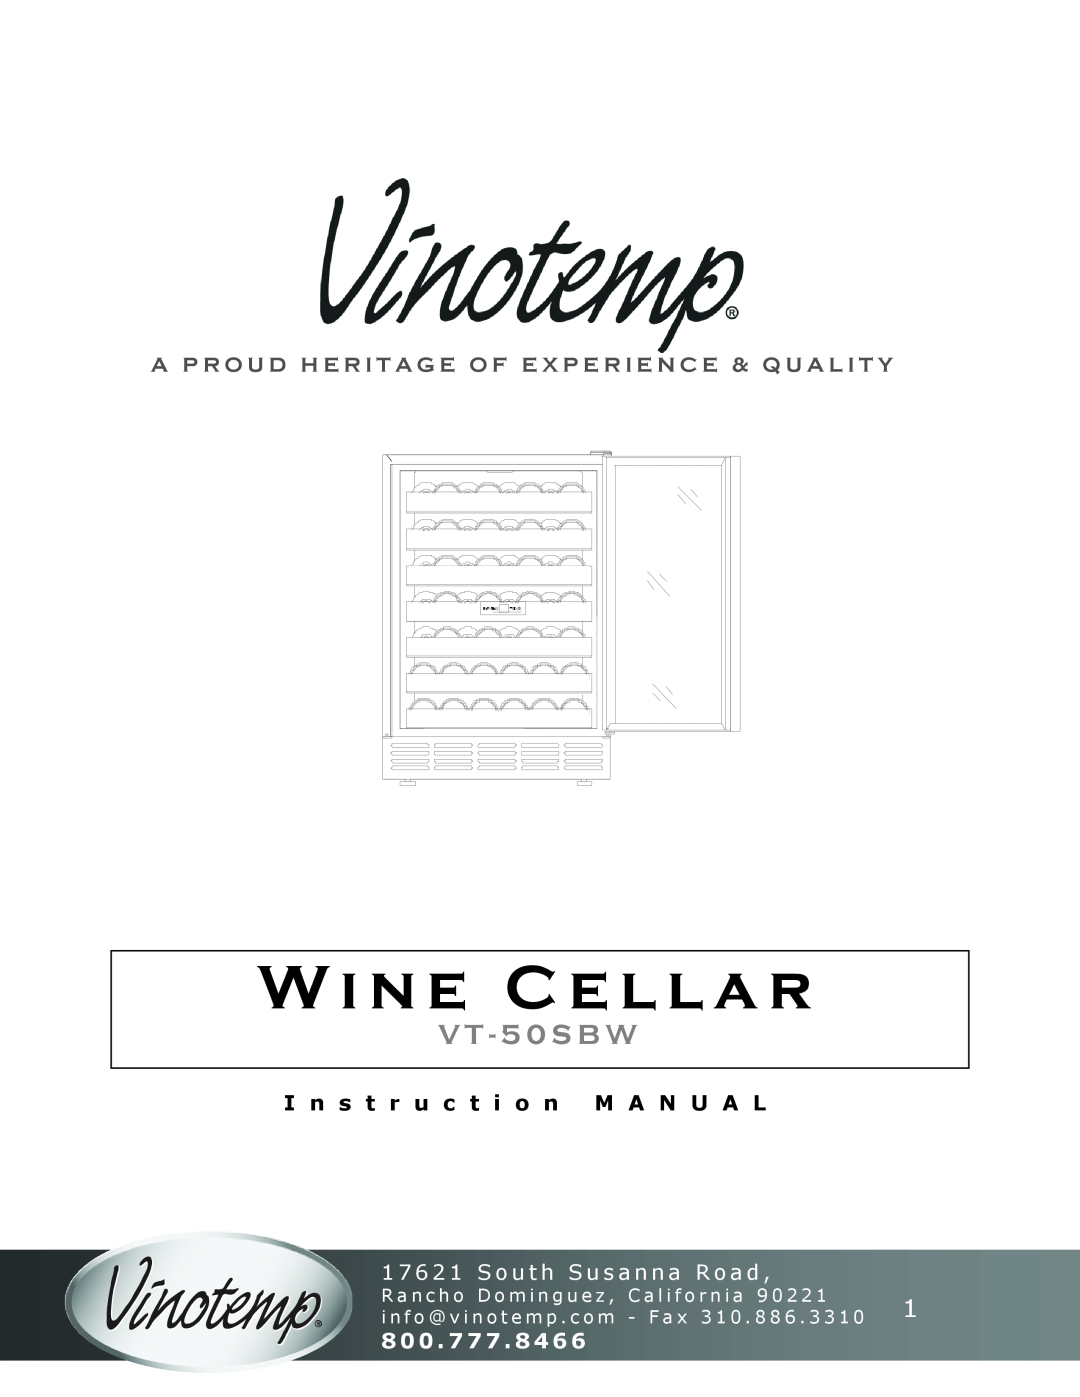 Vinotemp VT-50SBW instruction manual Wine Cellar, V T - 5 0 S B W, 1 7 6 2 1 S o u t h S u s a n n a R o a d, 800 